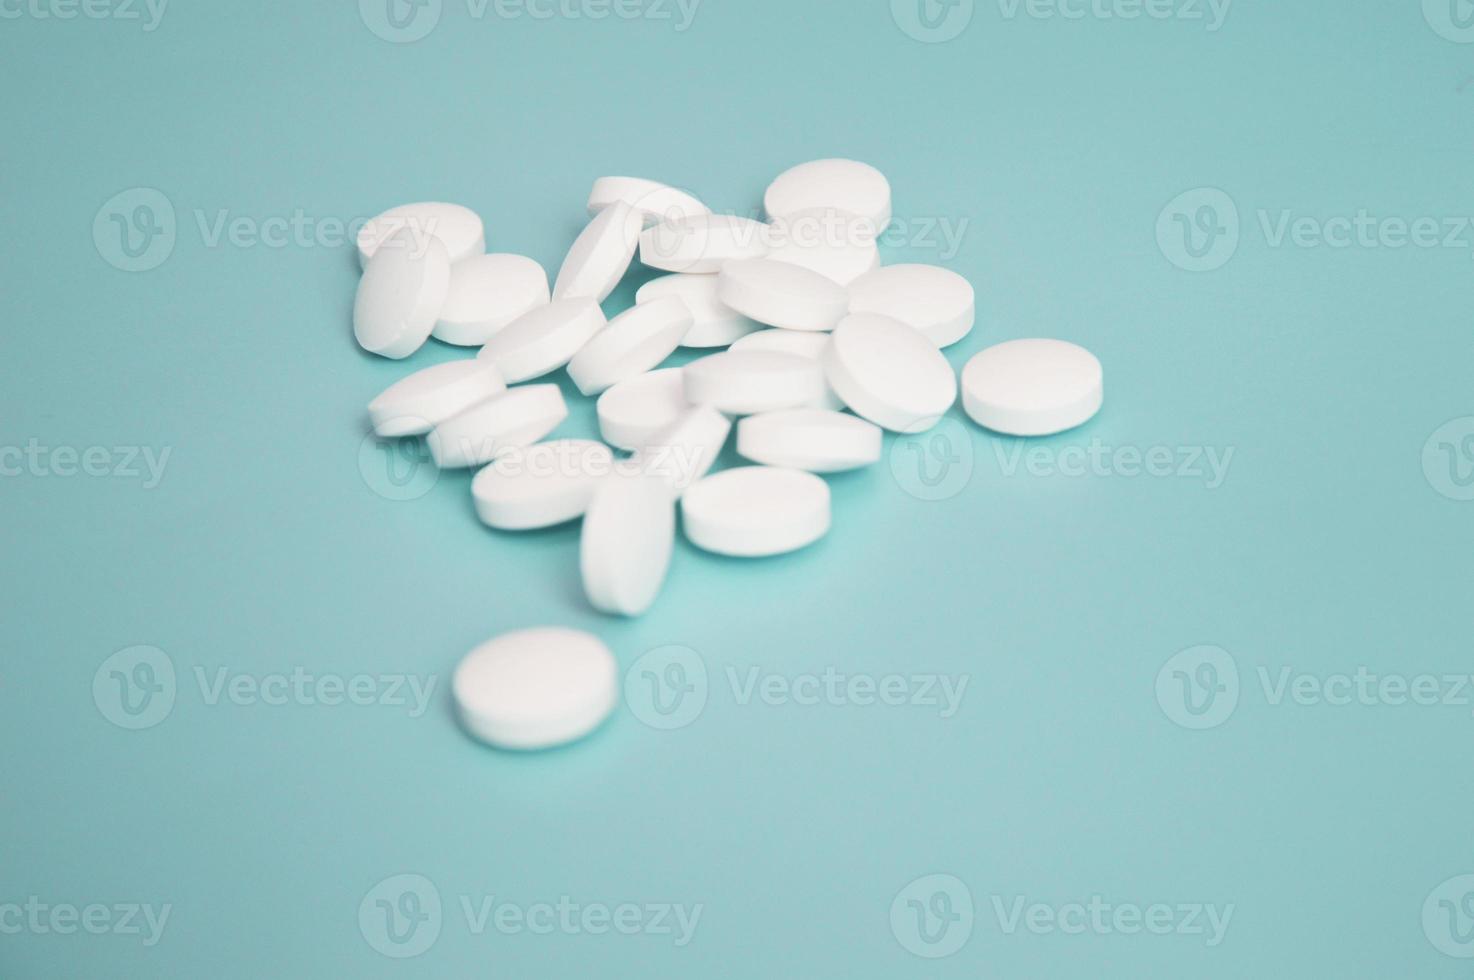 des pilules médicales blanches en vrac se trouvent sur un fond turquoise clair. santé. médicaments, bioadditifs. pharmacie, ordonnance. industrie pharmaceutique. photo